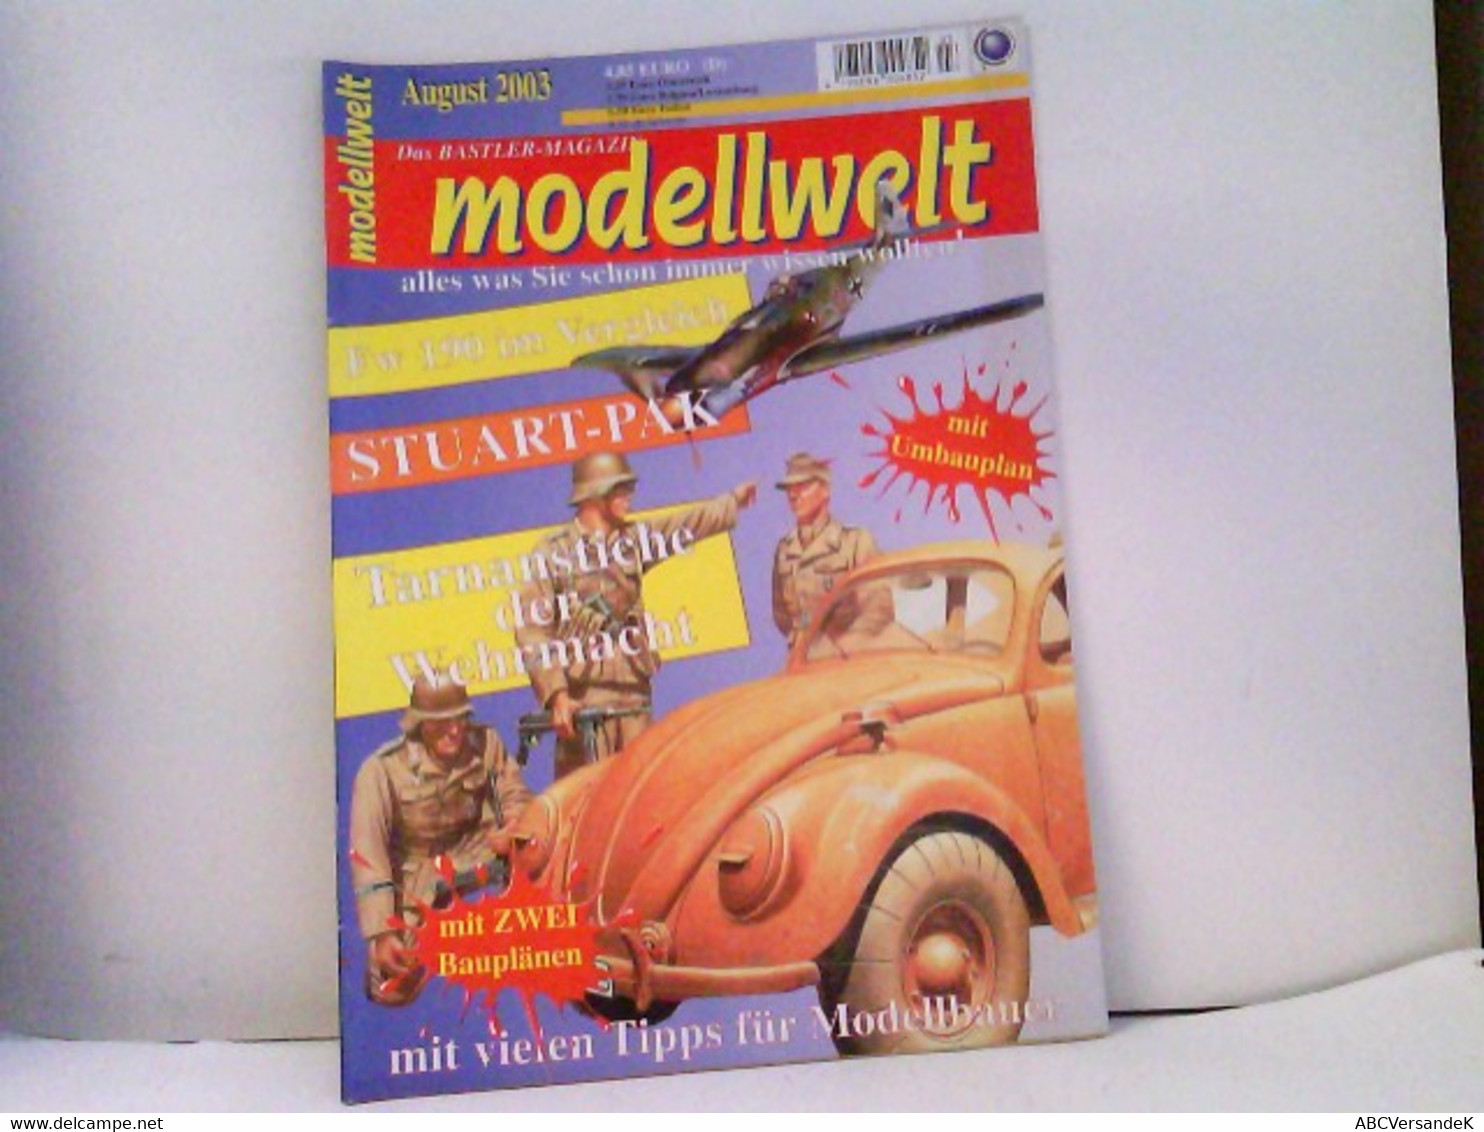 MODELLWELT Das Magazin Für Modellbau 8/2003 - Police & Military